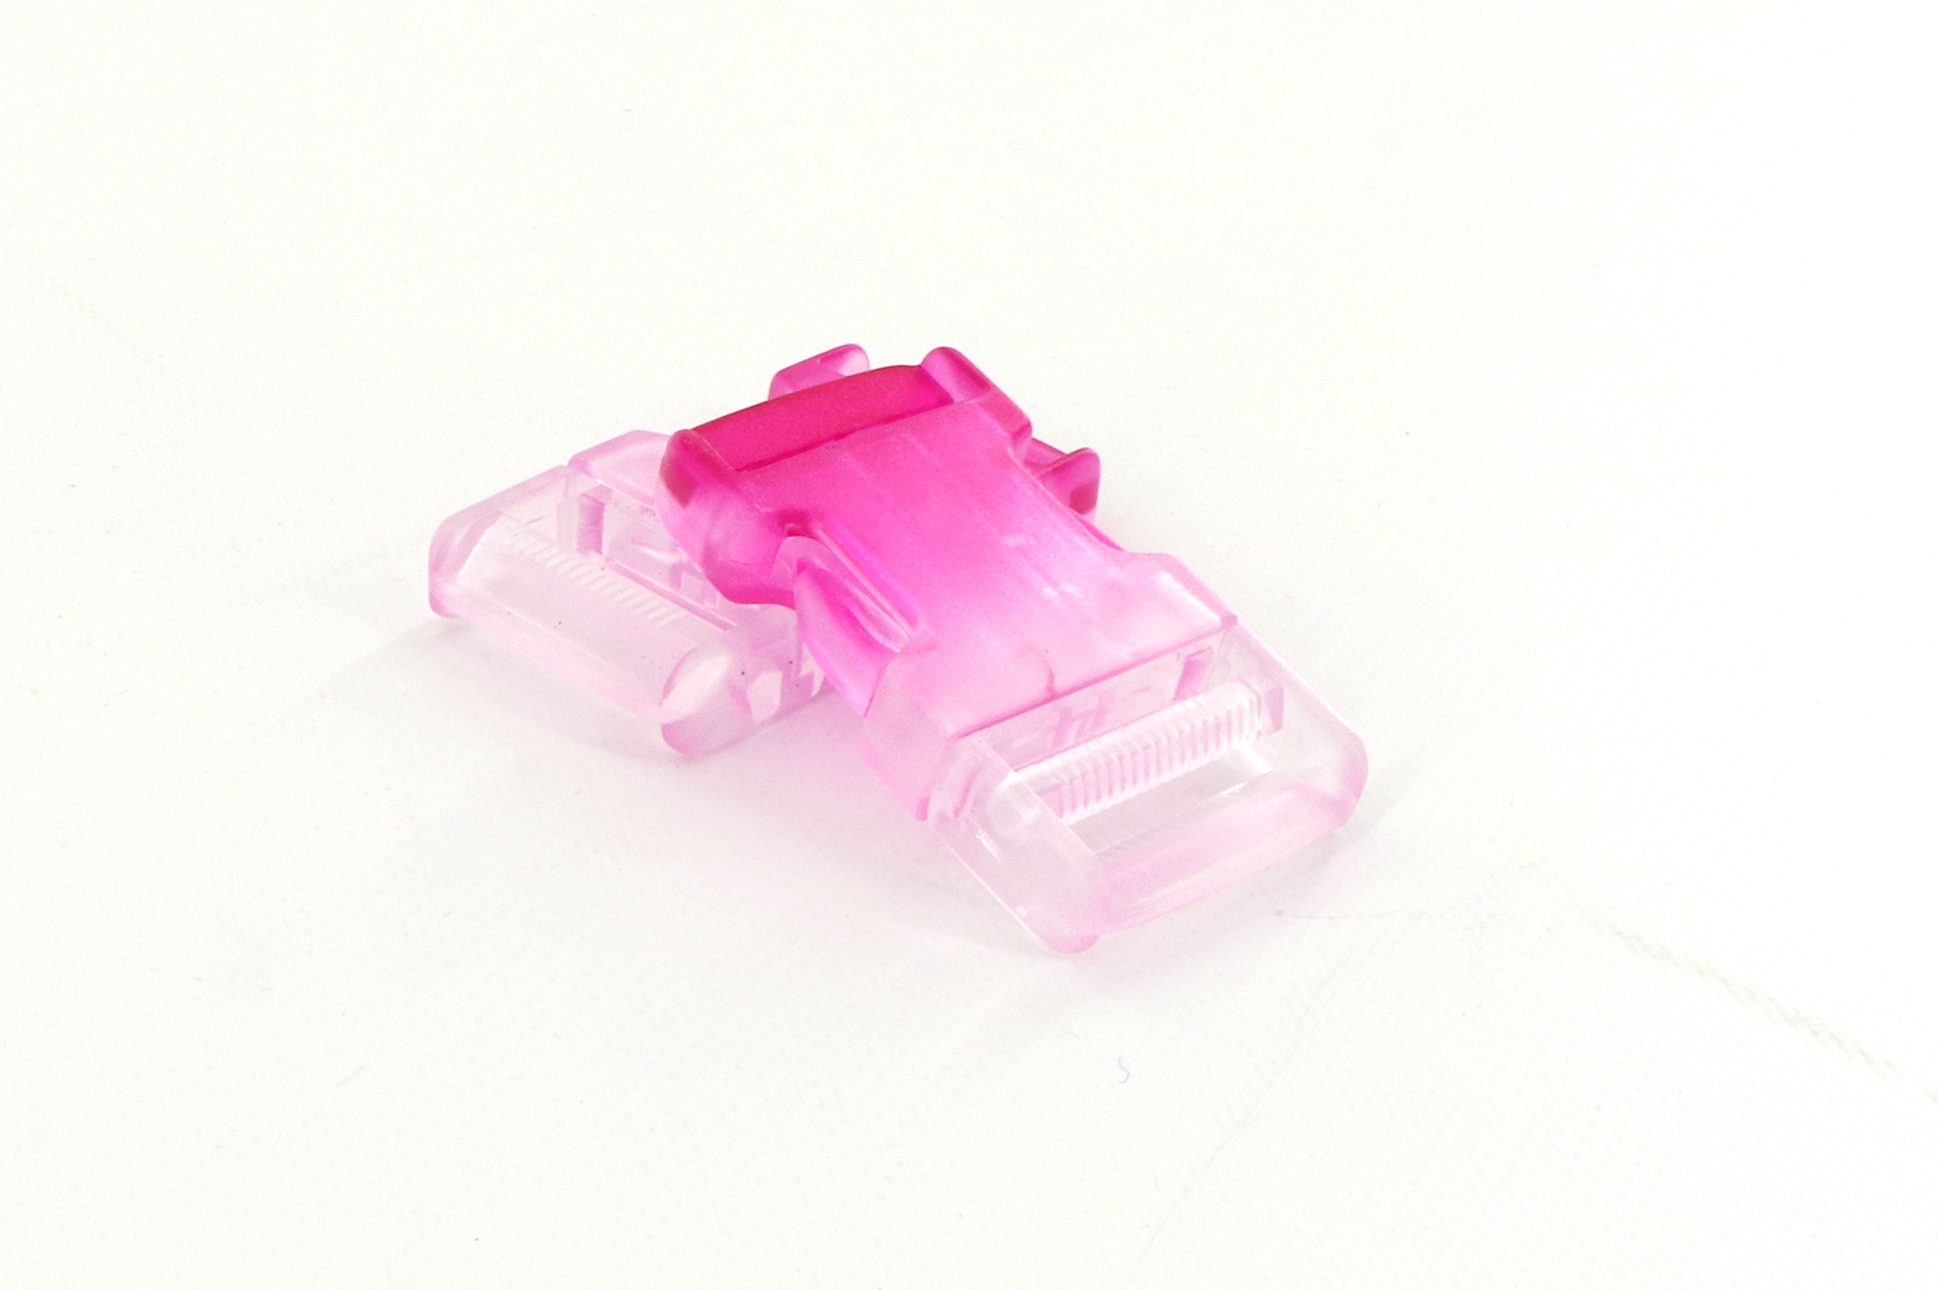 Fibbia, 3 cm, plastica colore bianco e pink